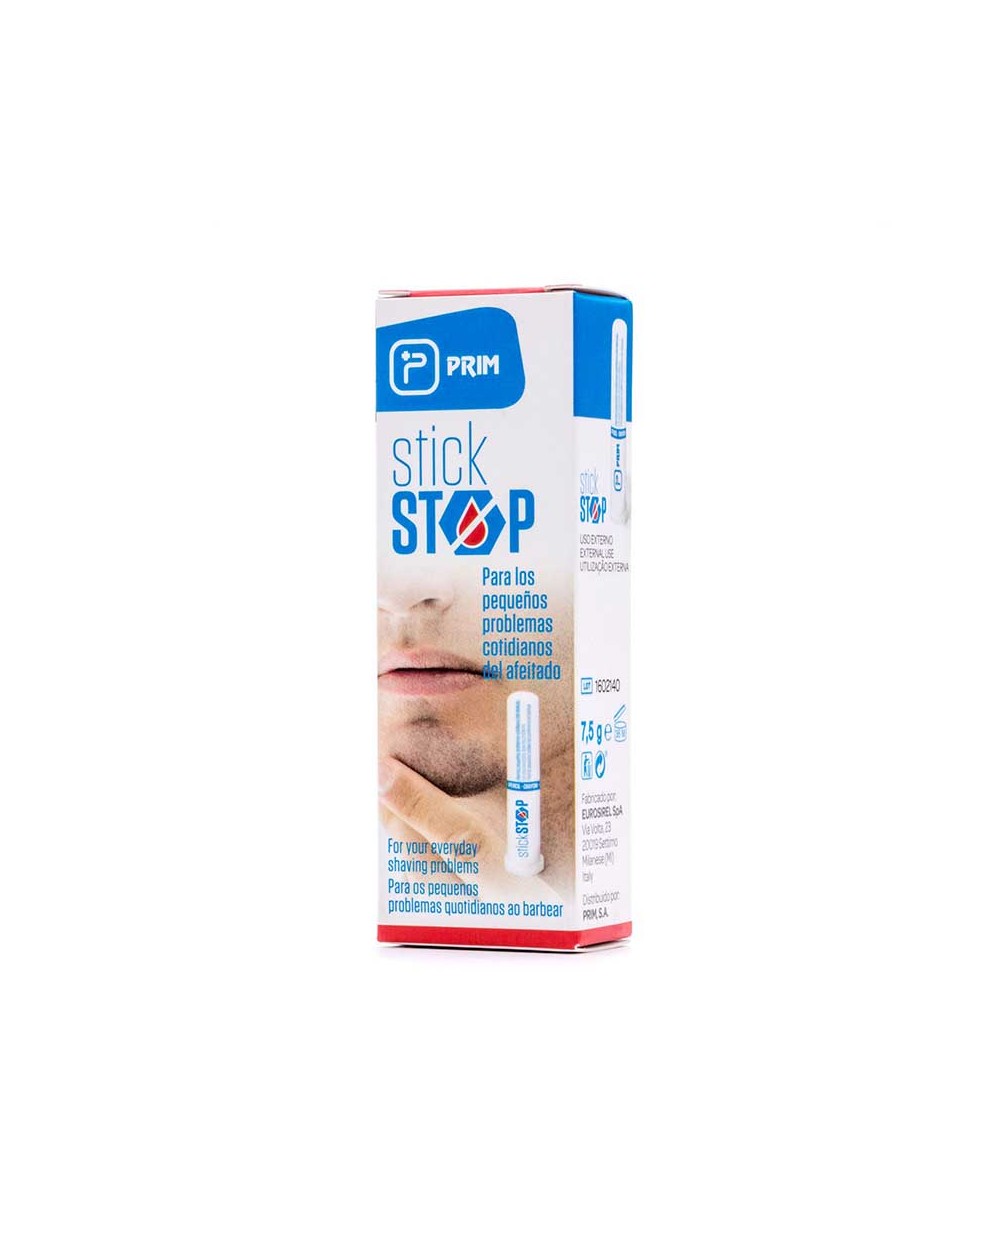 Stick Stop Prim para detener el sangrado producido al afeitarse